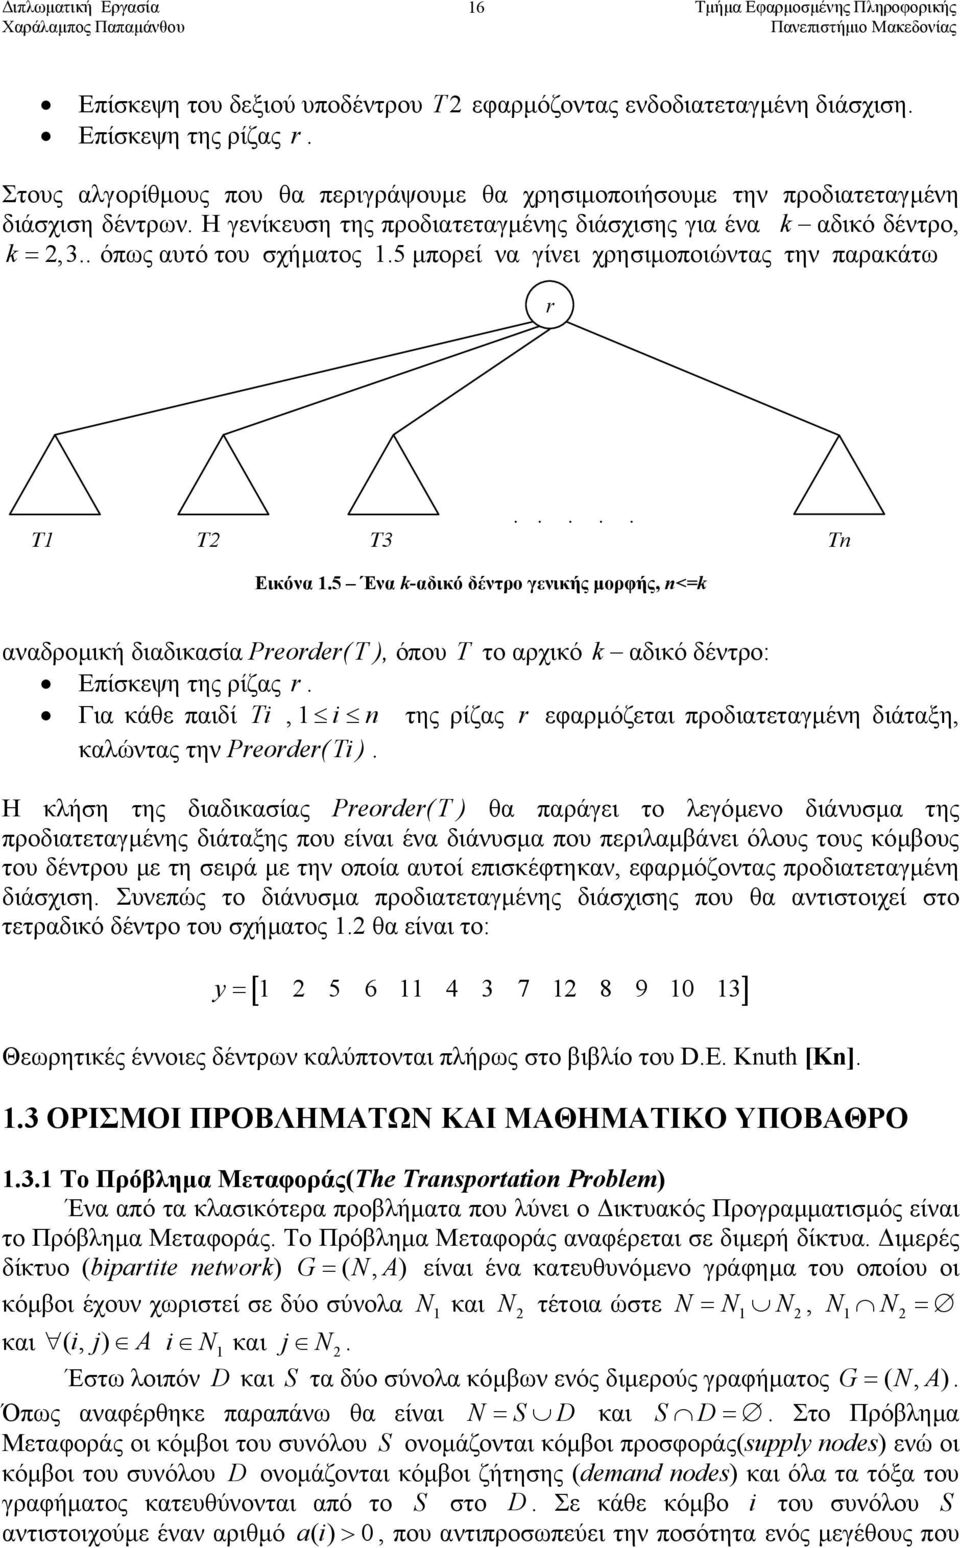 5 Ένα k-αδικό δέντρο γενικής µορφής, n<=k αναδροµική διαδικασία Preorder(T ), όπου T το αρχικό k αδικό δέντρο: Επίσκεψη της ρίζας r.